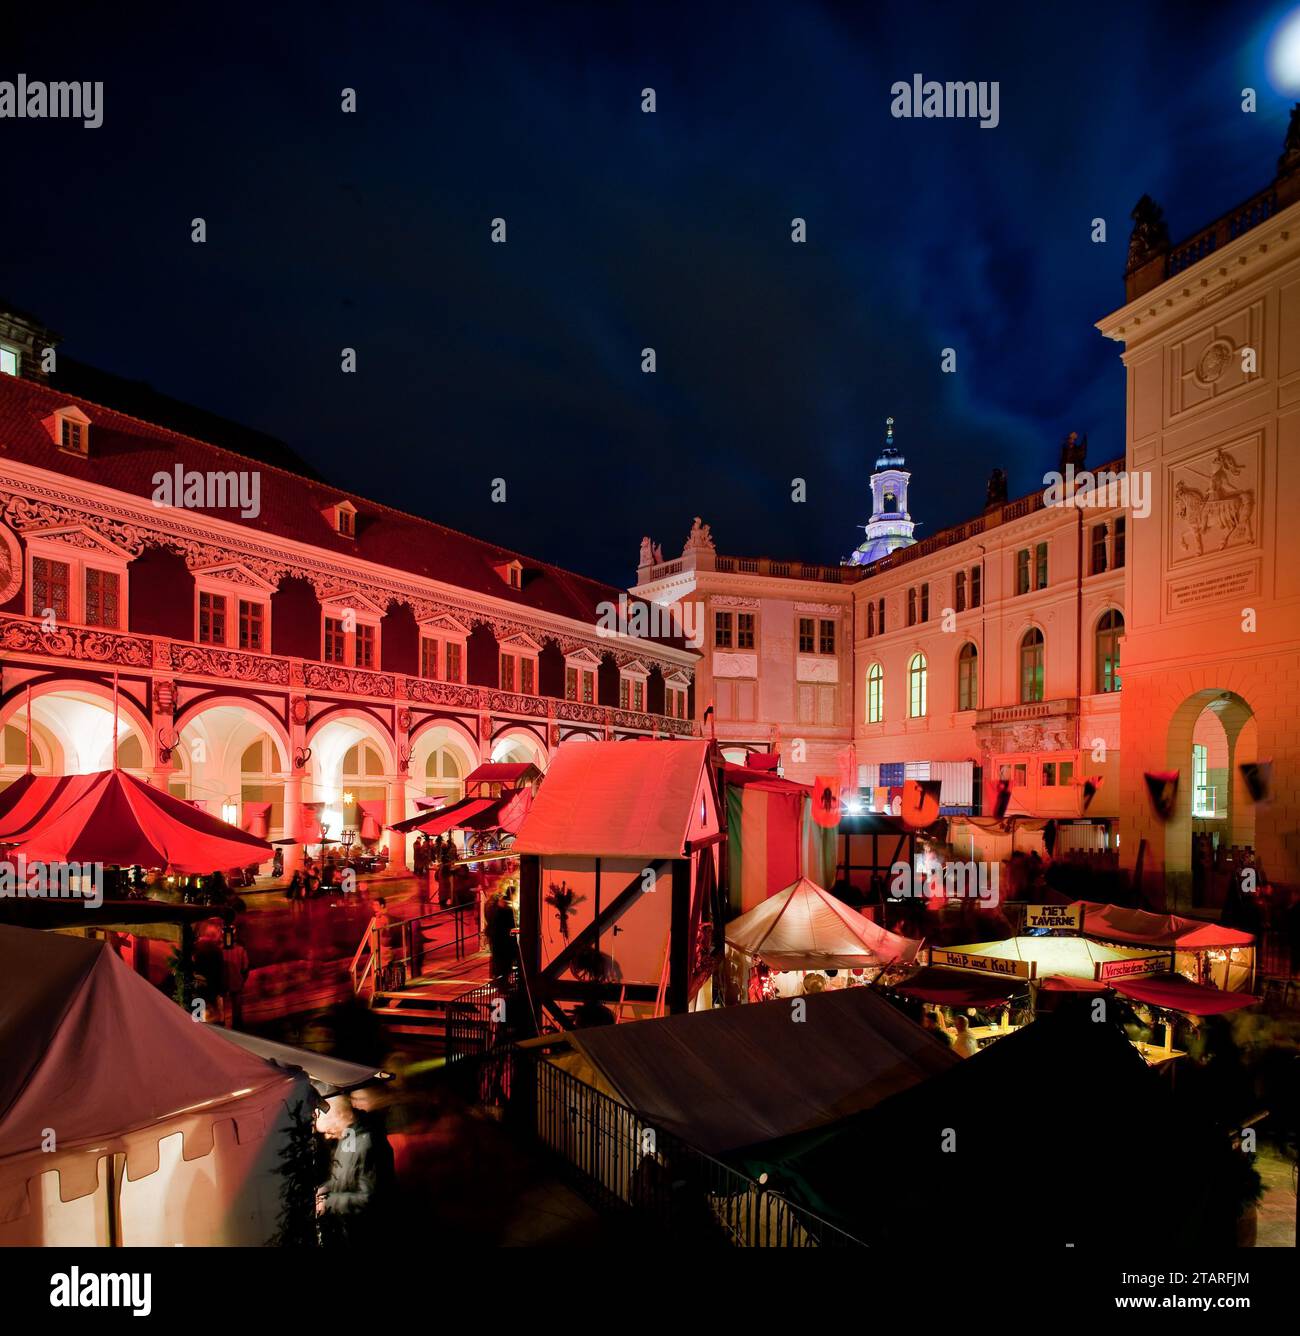 Il nostalgico mercatino di Natale nel cortile stabile del Palazzo della Residenza di Dresda offre anche momenti tranquilli e romantici nel trambusto natalizio Foto Stock